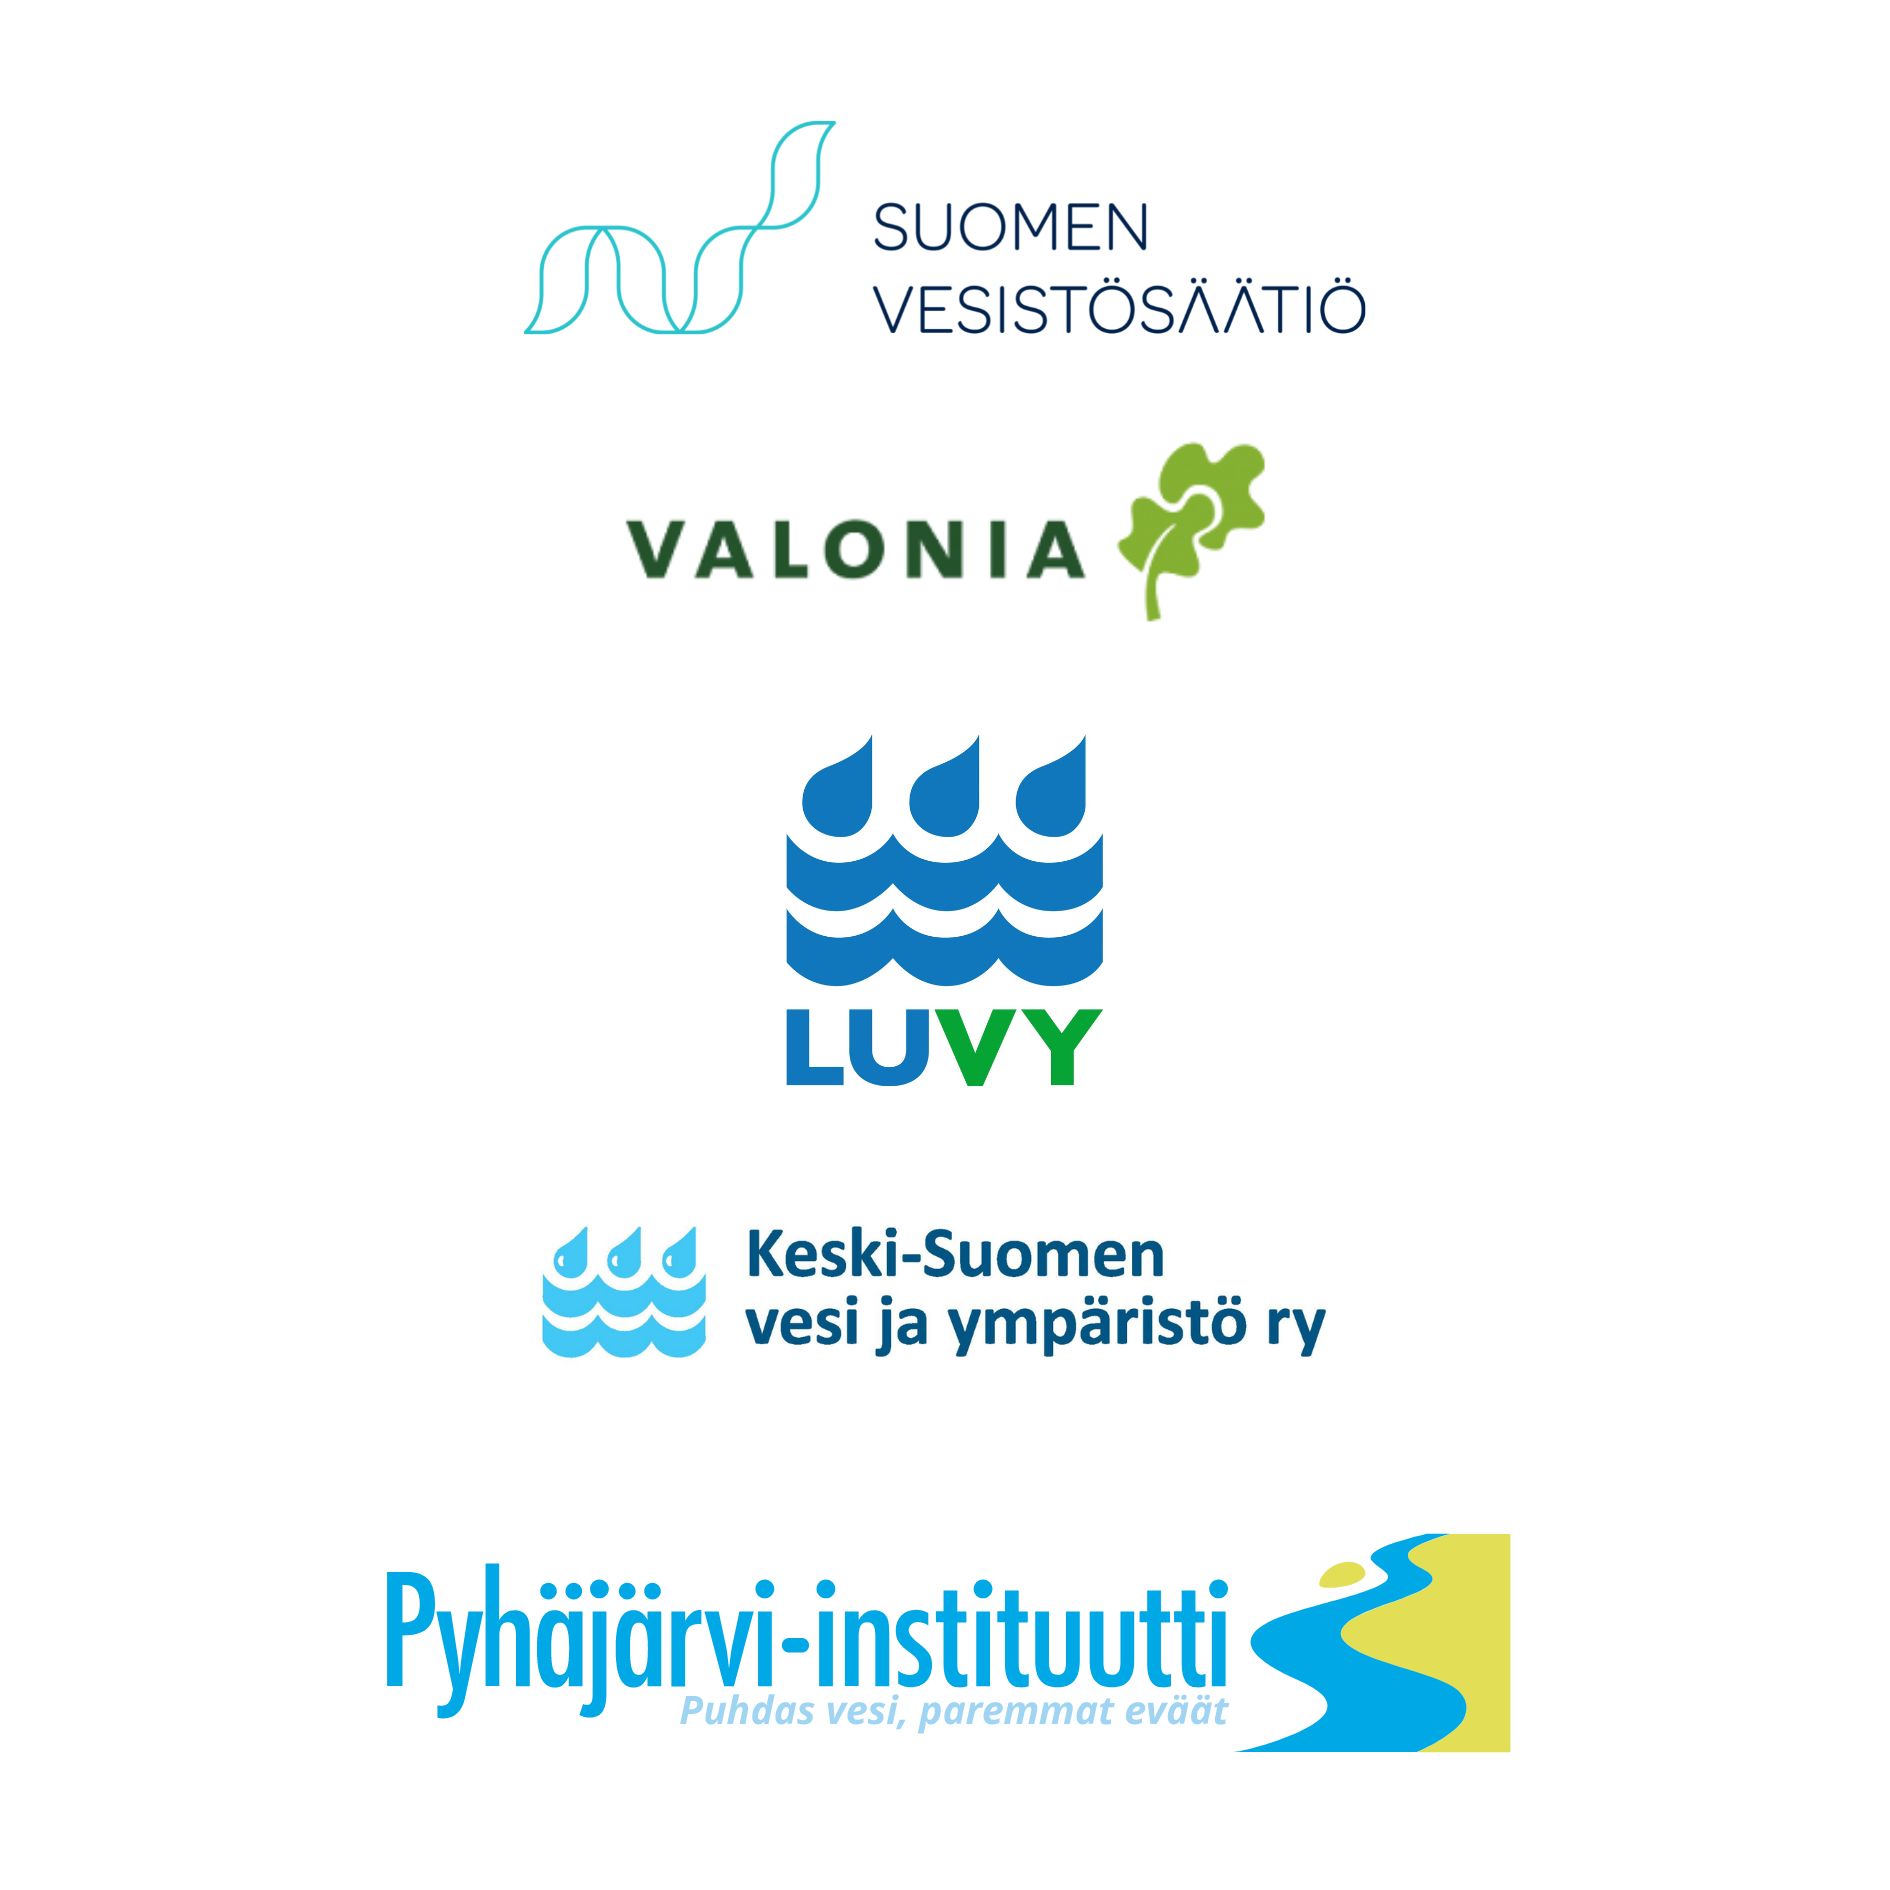 Suomen vesistösäätiön, Valonian, LUVYn, Keski-Suomen vesi ja ympäristö ry:n sekä Pyhäjärvi-instituutin logot